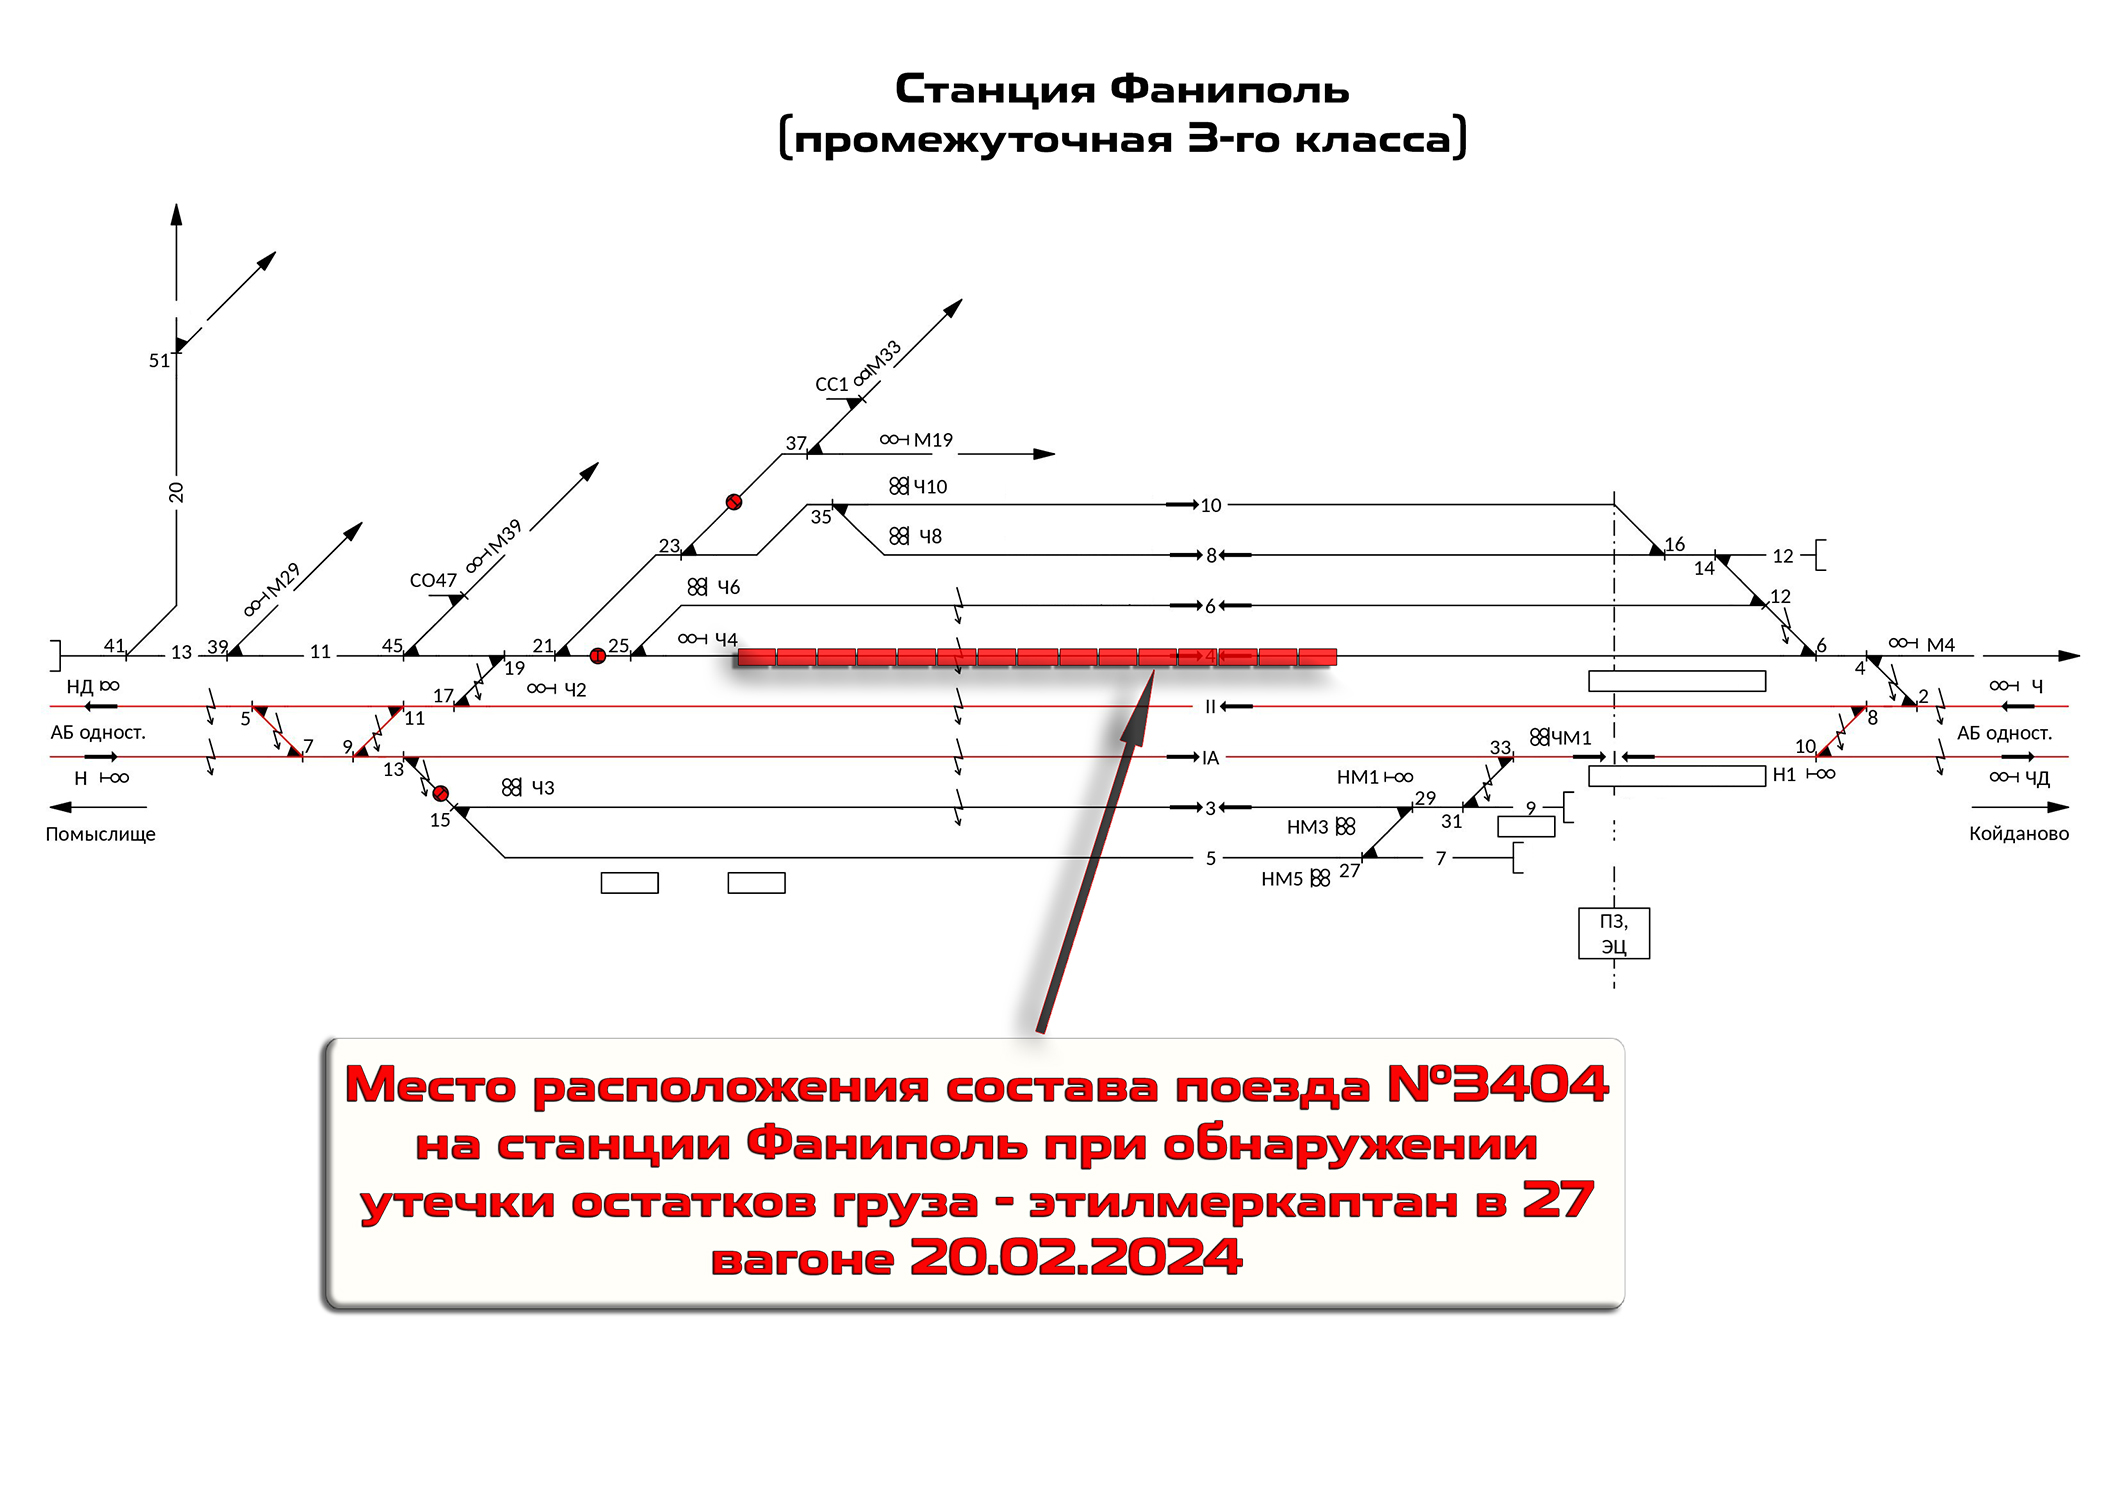 Расположение состава поезда №3404 на станции Фаниполь при обнаружении утечки остатков груза